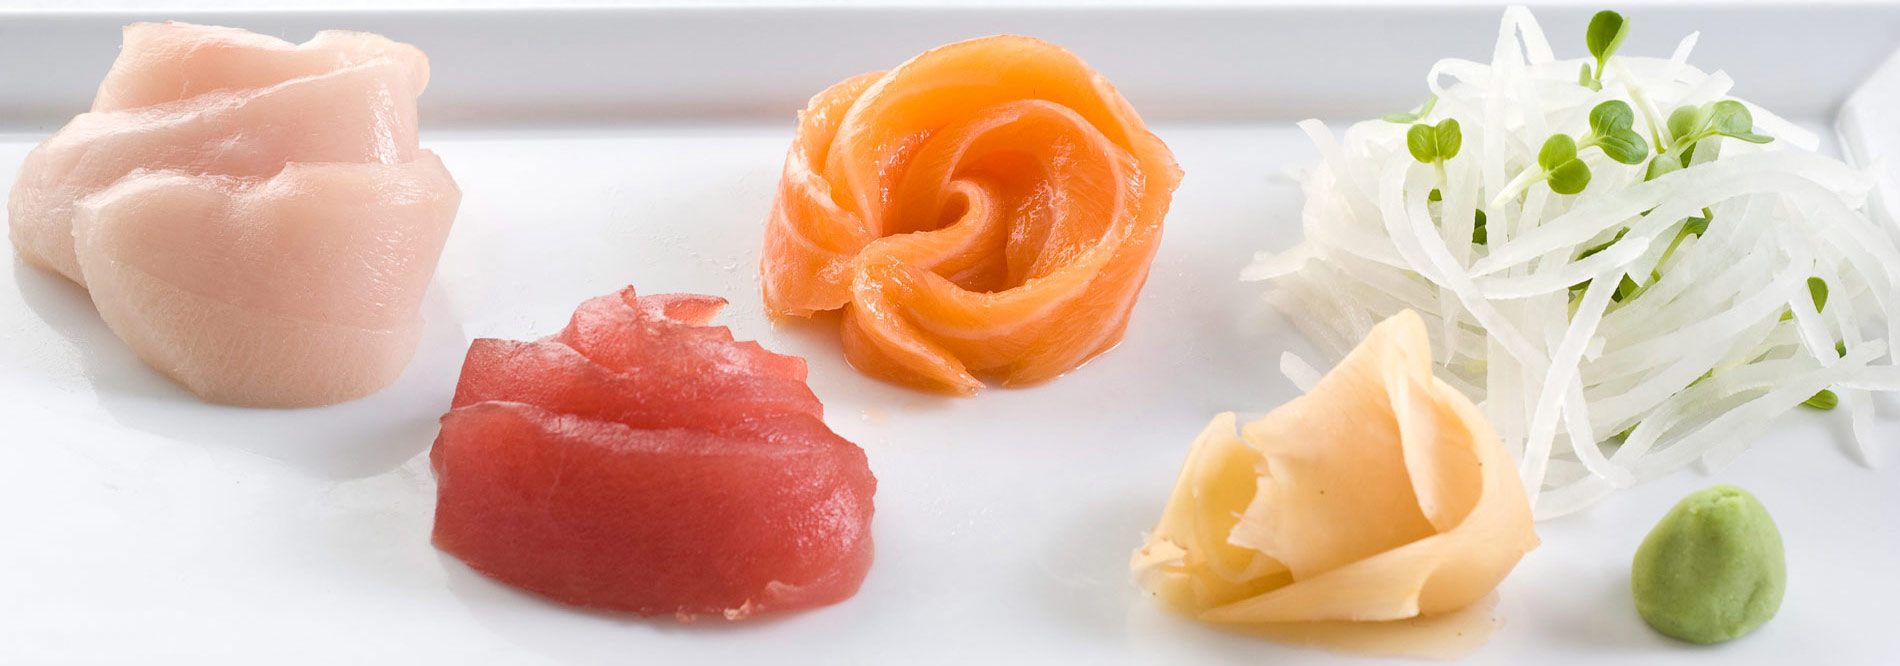 JI.030-Sashimi-trio-tuna-yellowtail-salmon-hero1